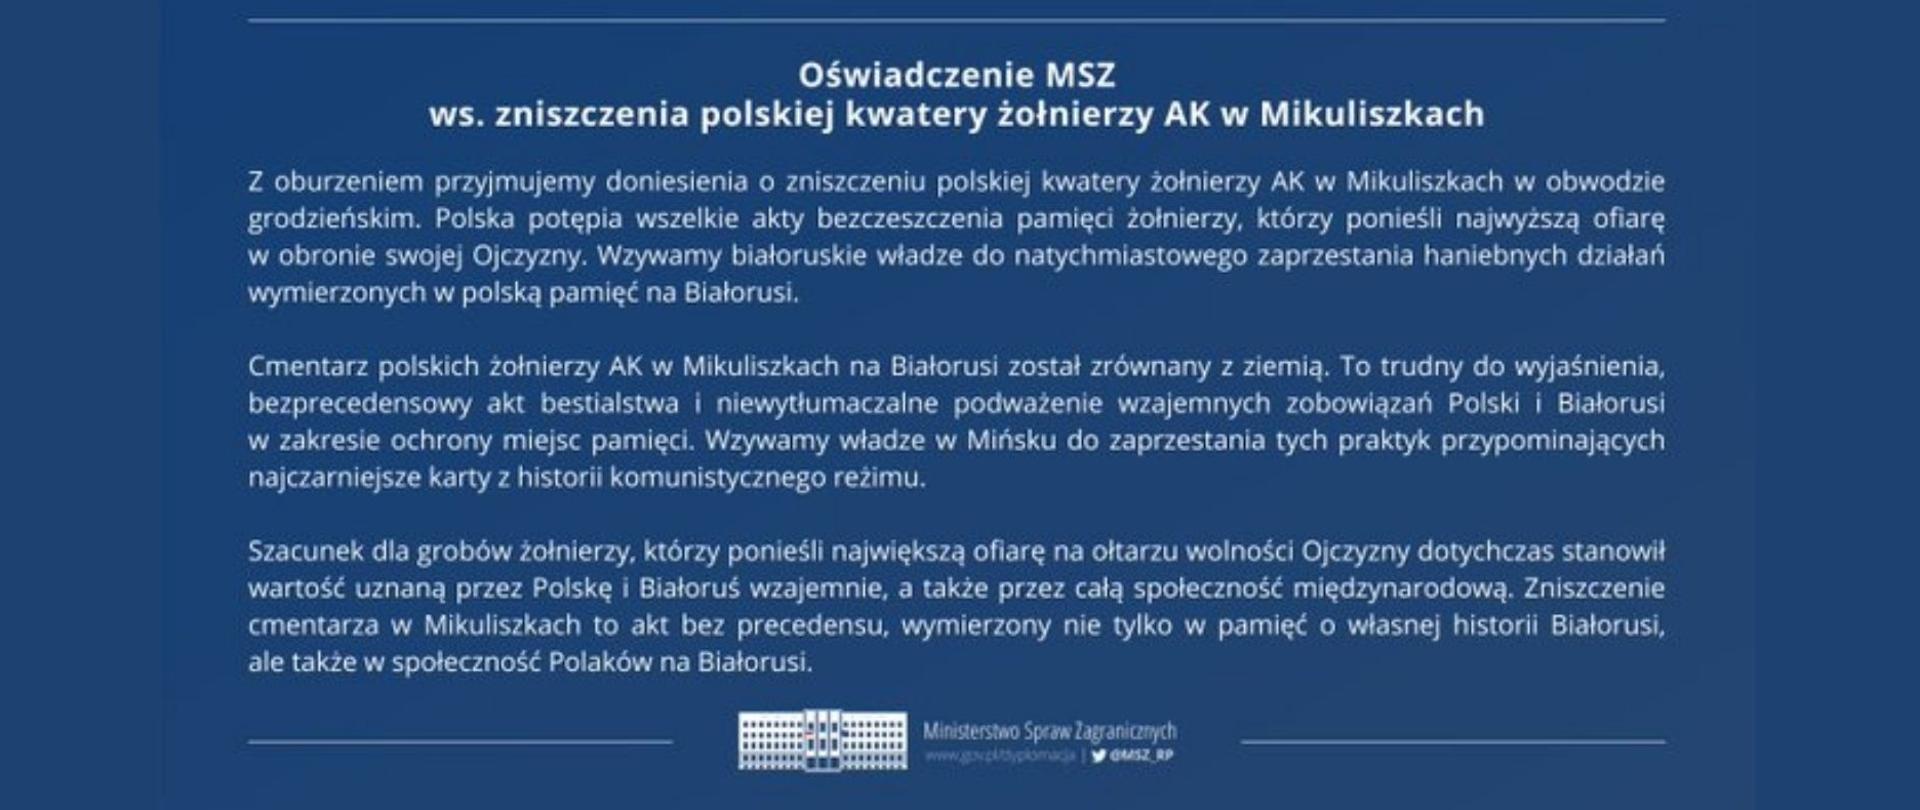 Oświadczenie MSZ w sprawie zniszczenia polskiej kwatery na cmentarzu w Mikuliszkach